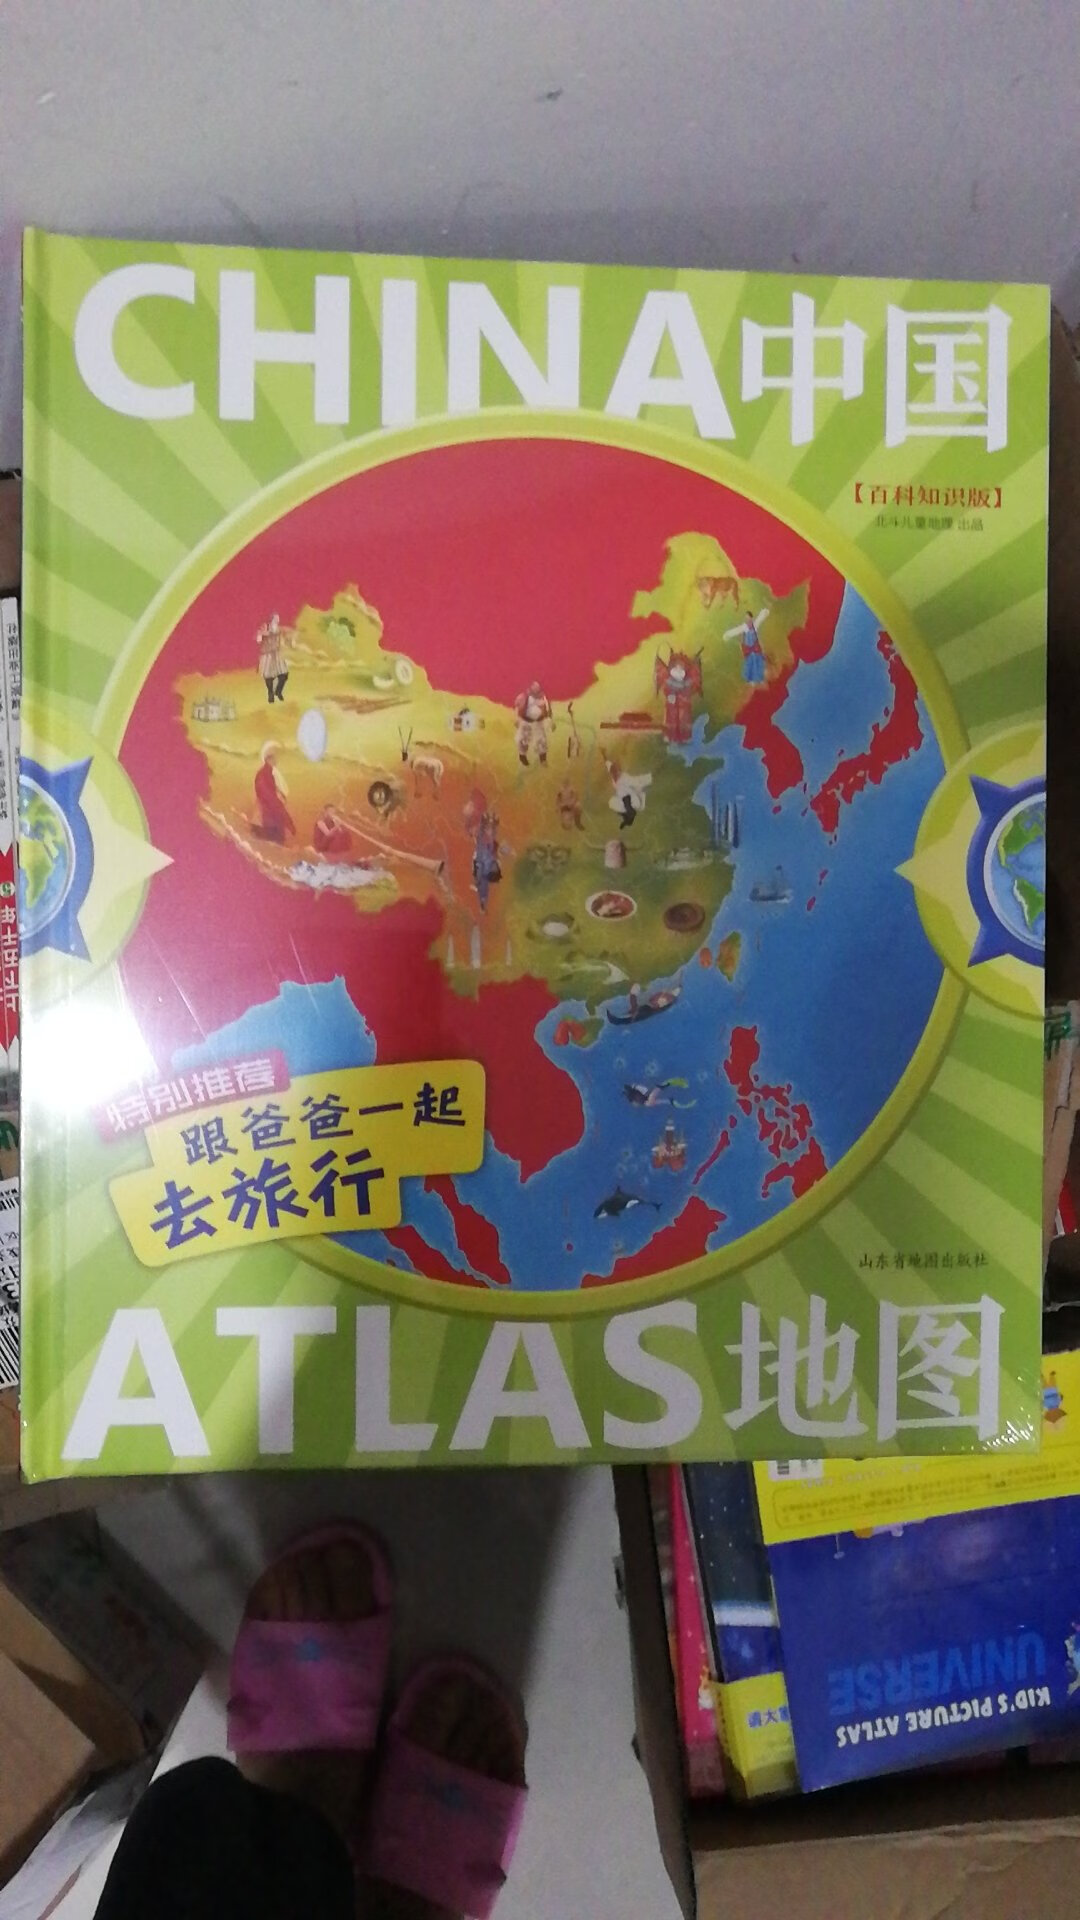 这套中国地图是带有亲子主题的，可以帮助孩子了解中国的地理，希望孩子能喜欢